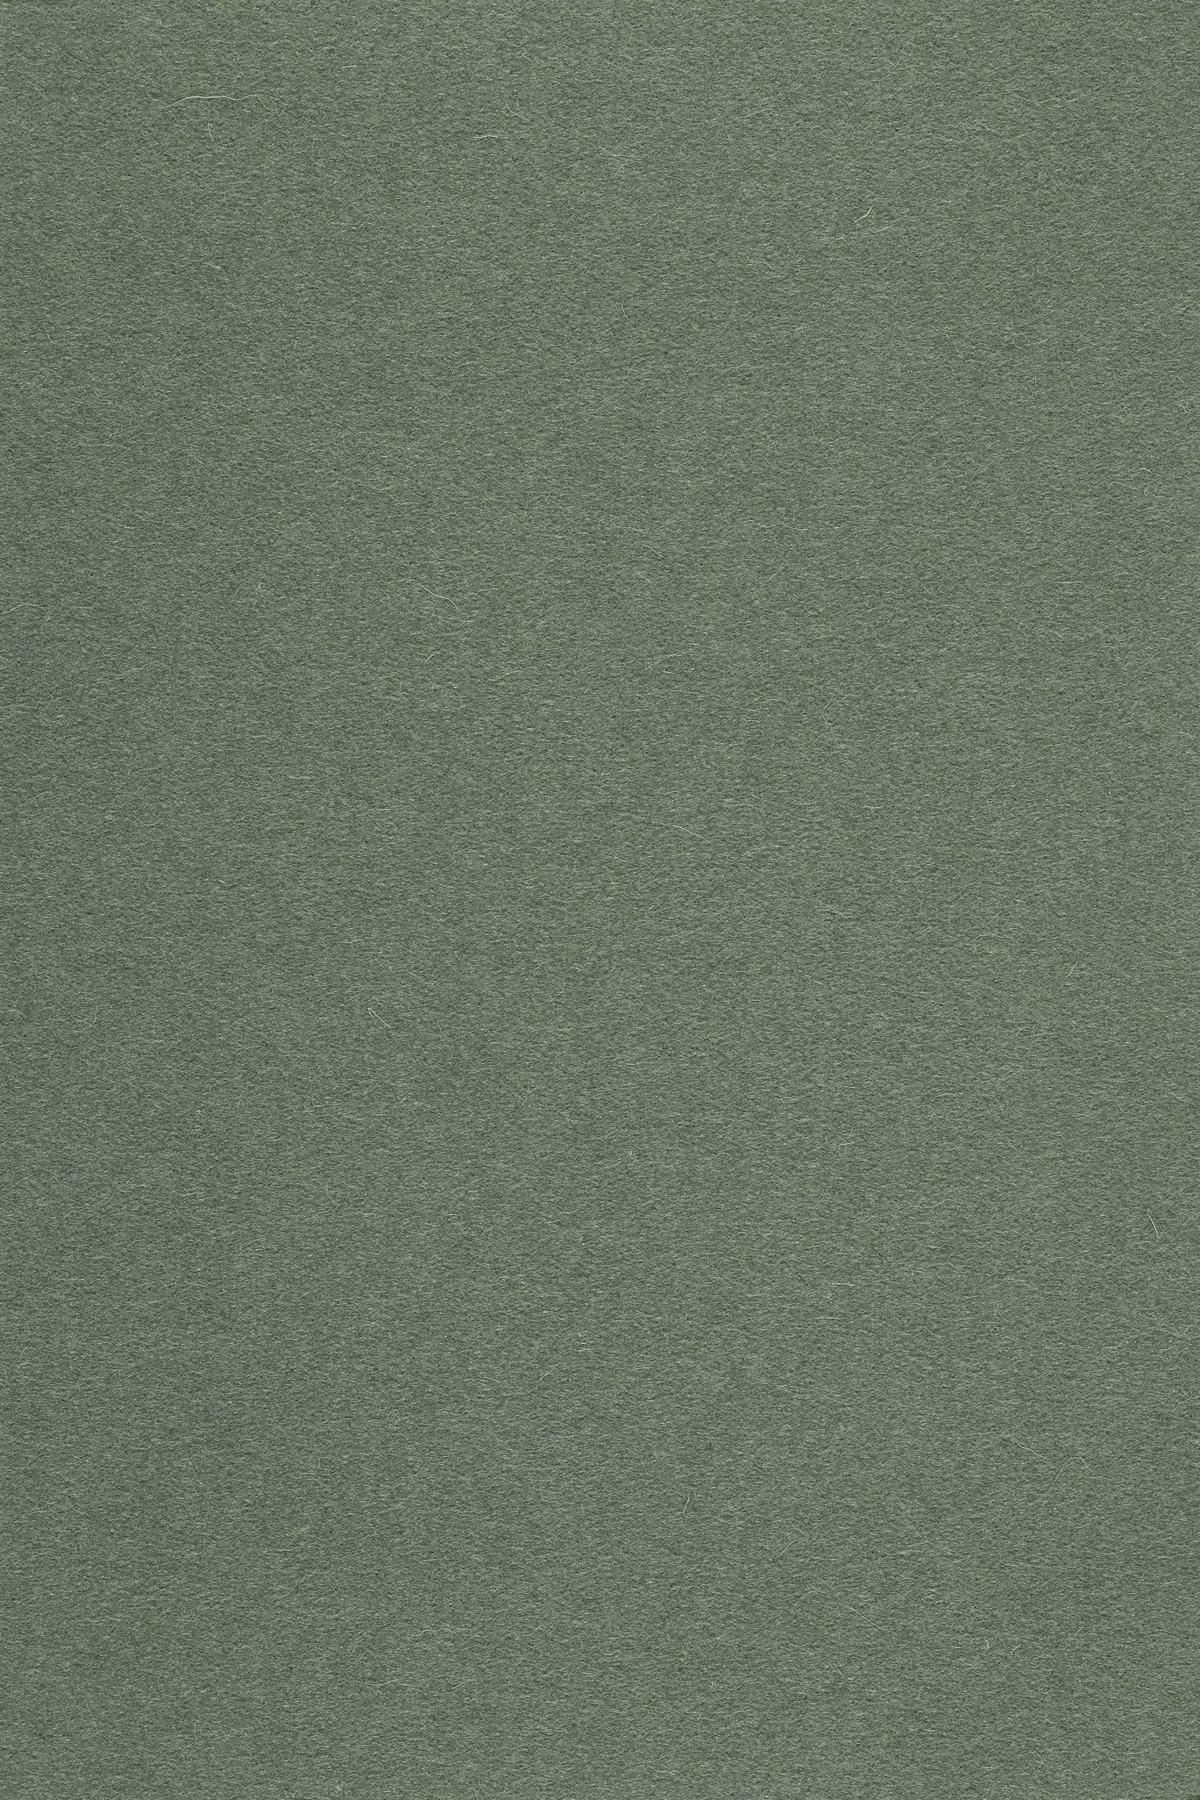 Fabric sample Divina 3 944 green